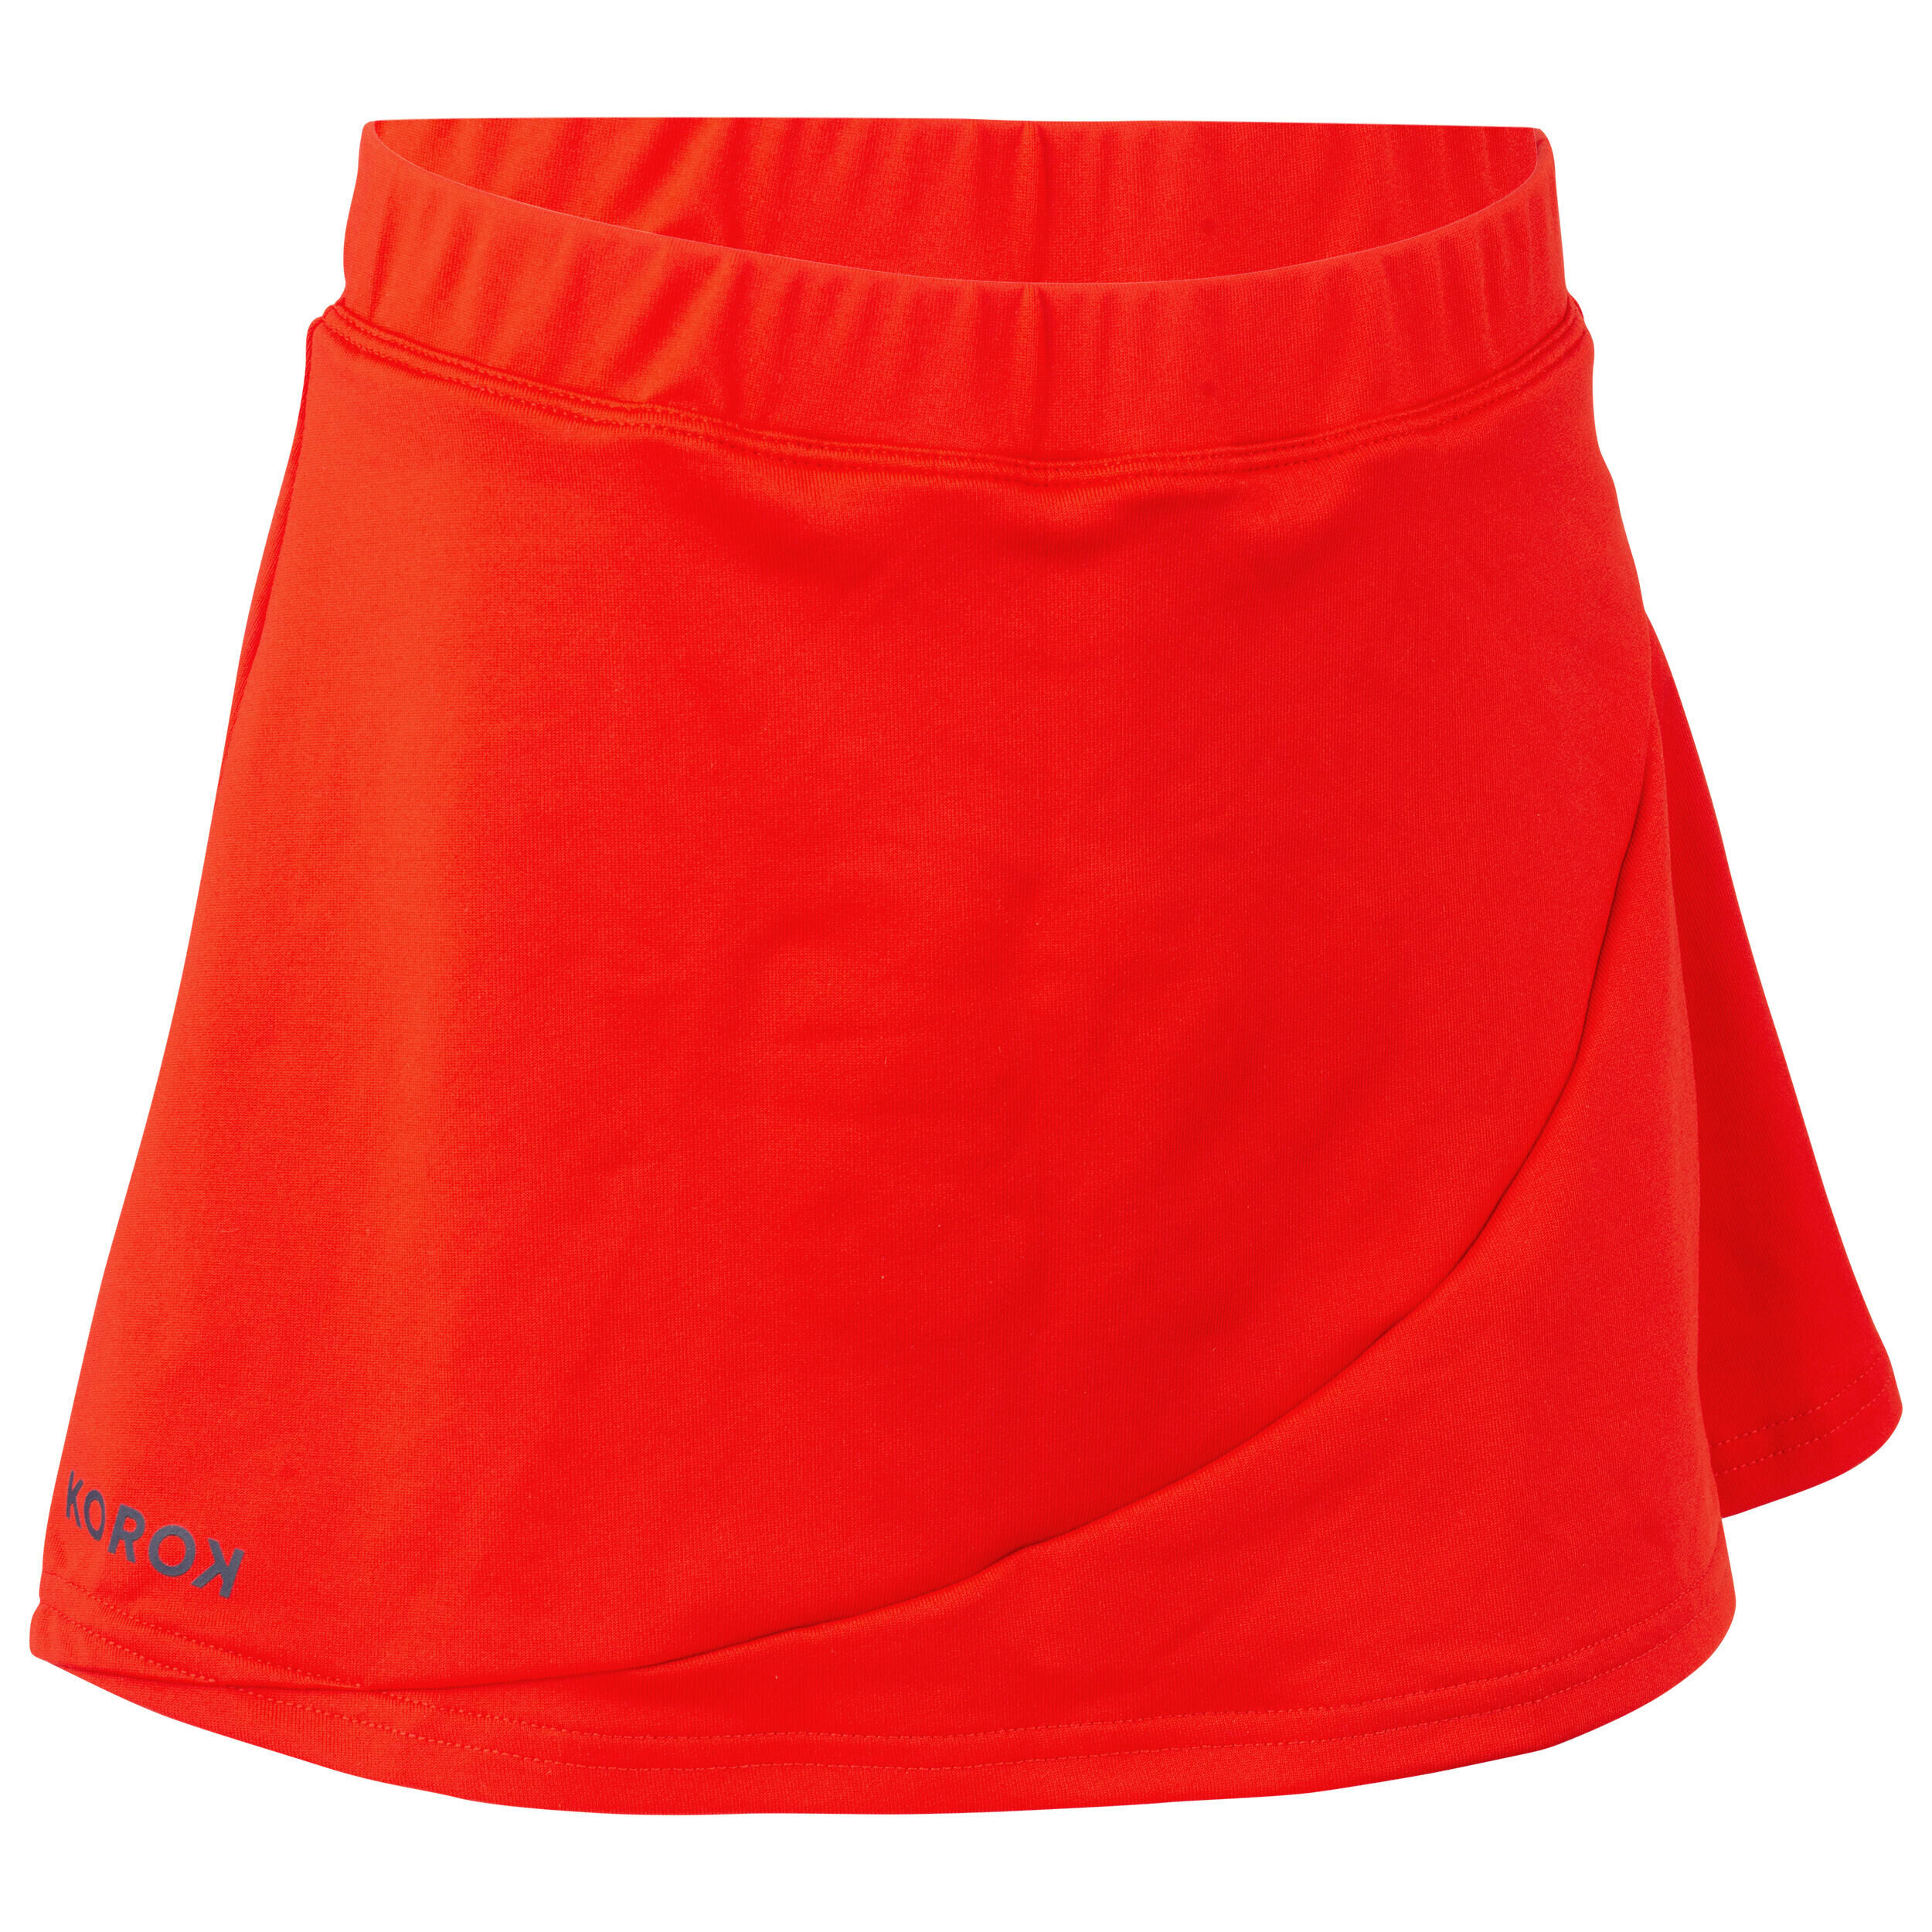 KOROK Girls' Field Hockey Skirt FH500 - Red